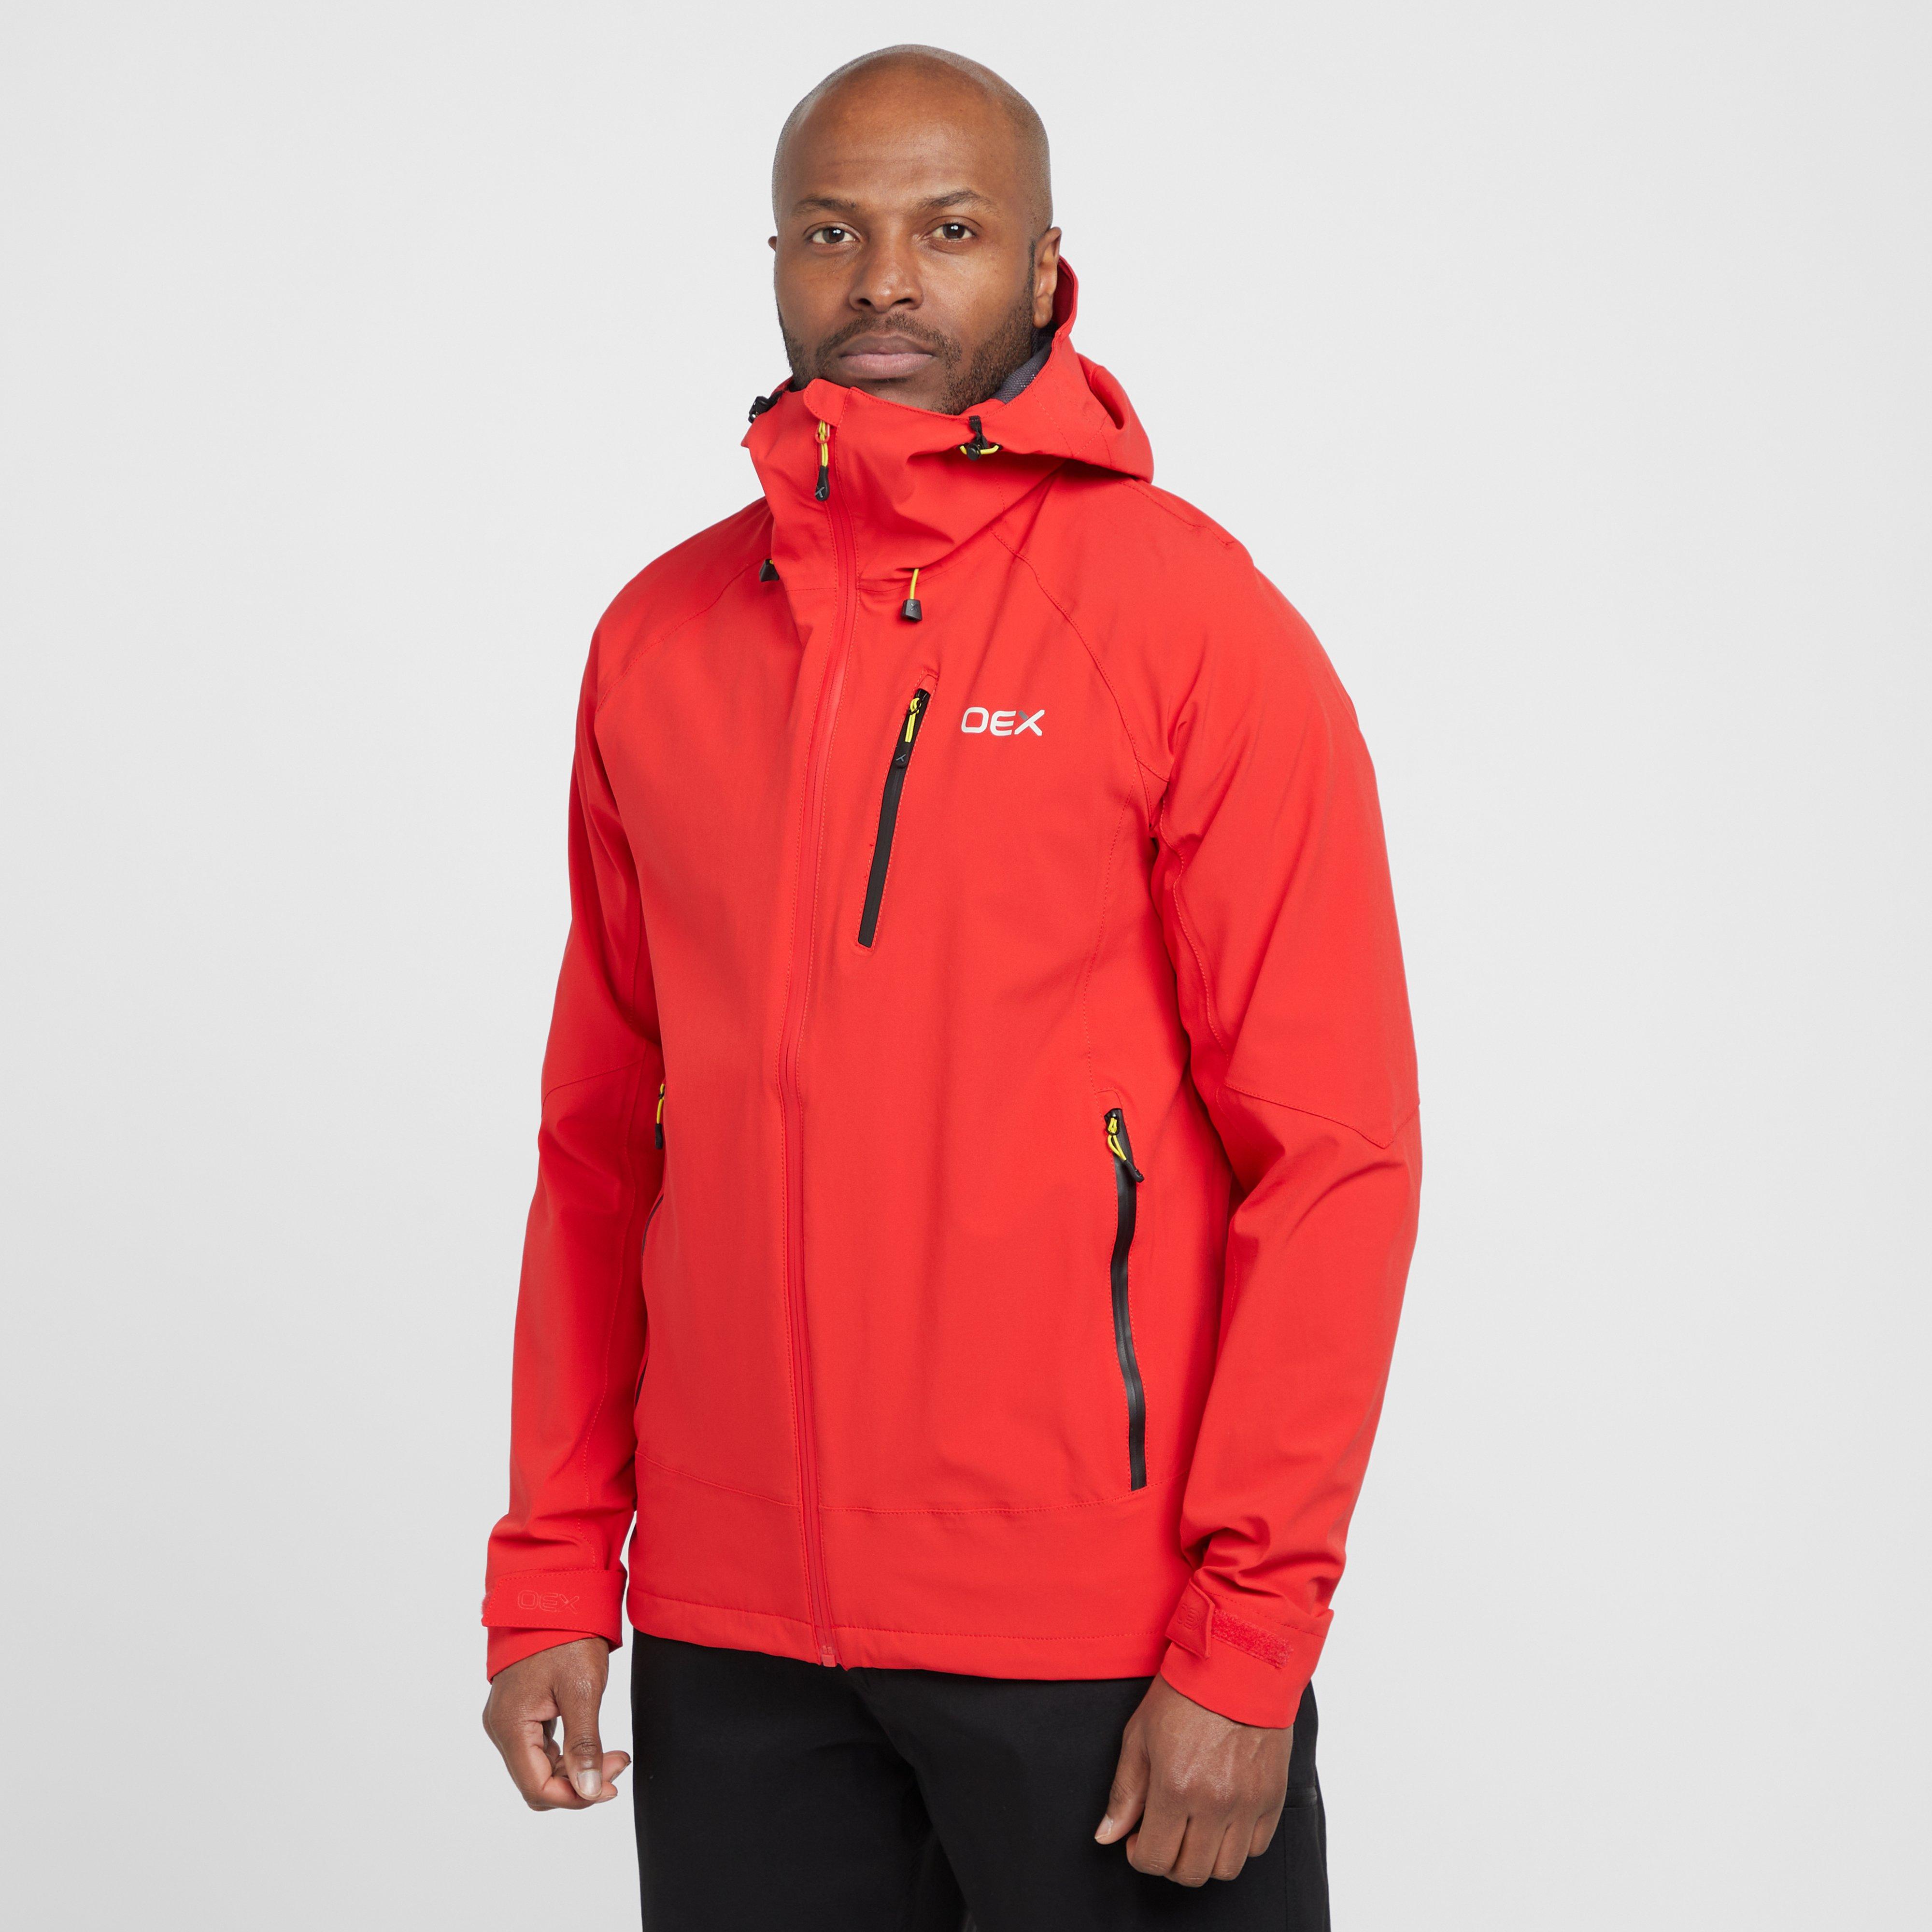 OEX Men's Aonach Waterproof Jacket, Red